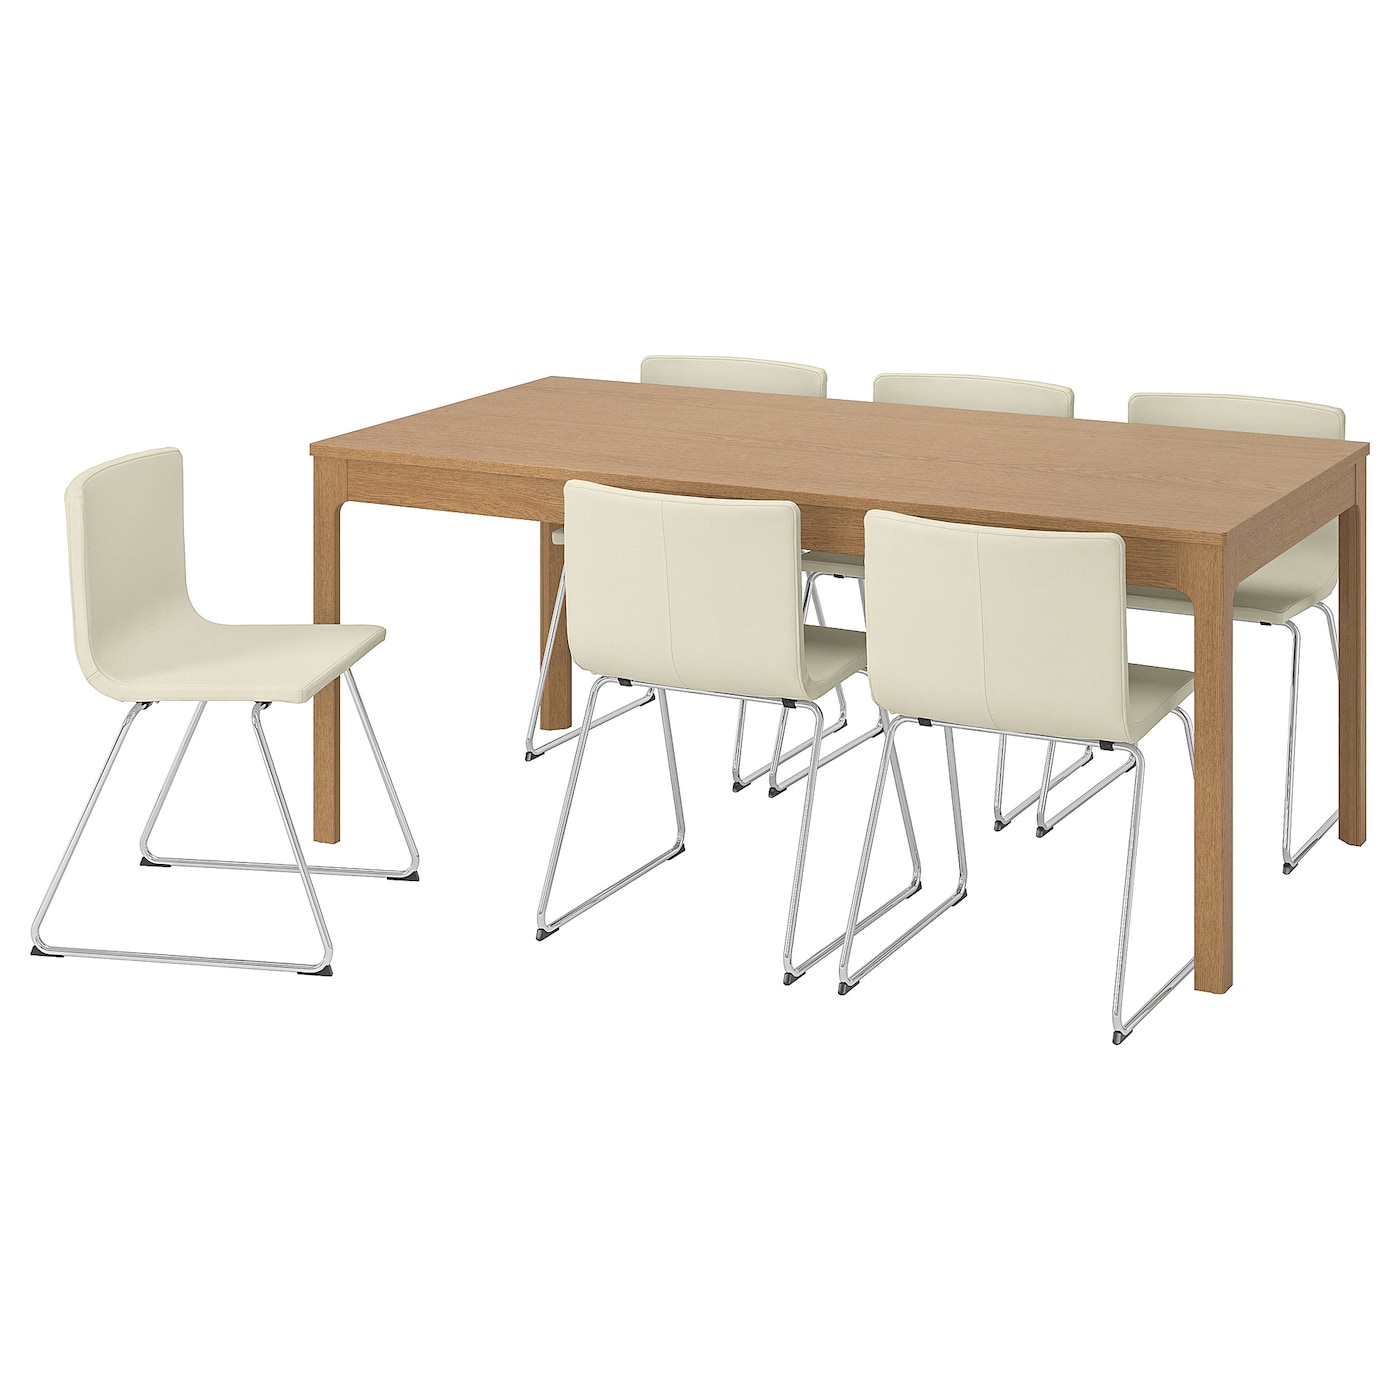 EKEDALEN / BERNHARD Tisch und 6 Stühle  - Essplatzgruppe - Möbel Ideen für dein Zuhause von Home Trends. Möbel Trends von Social Media Influencer für dein Skandi Zuhause.